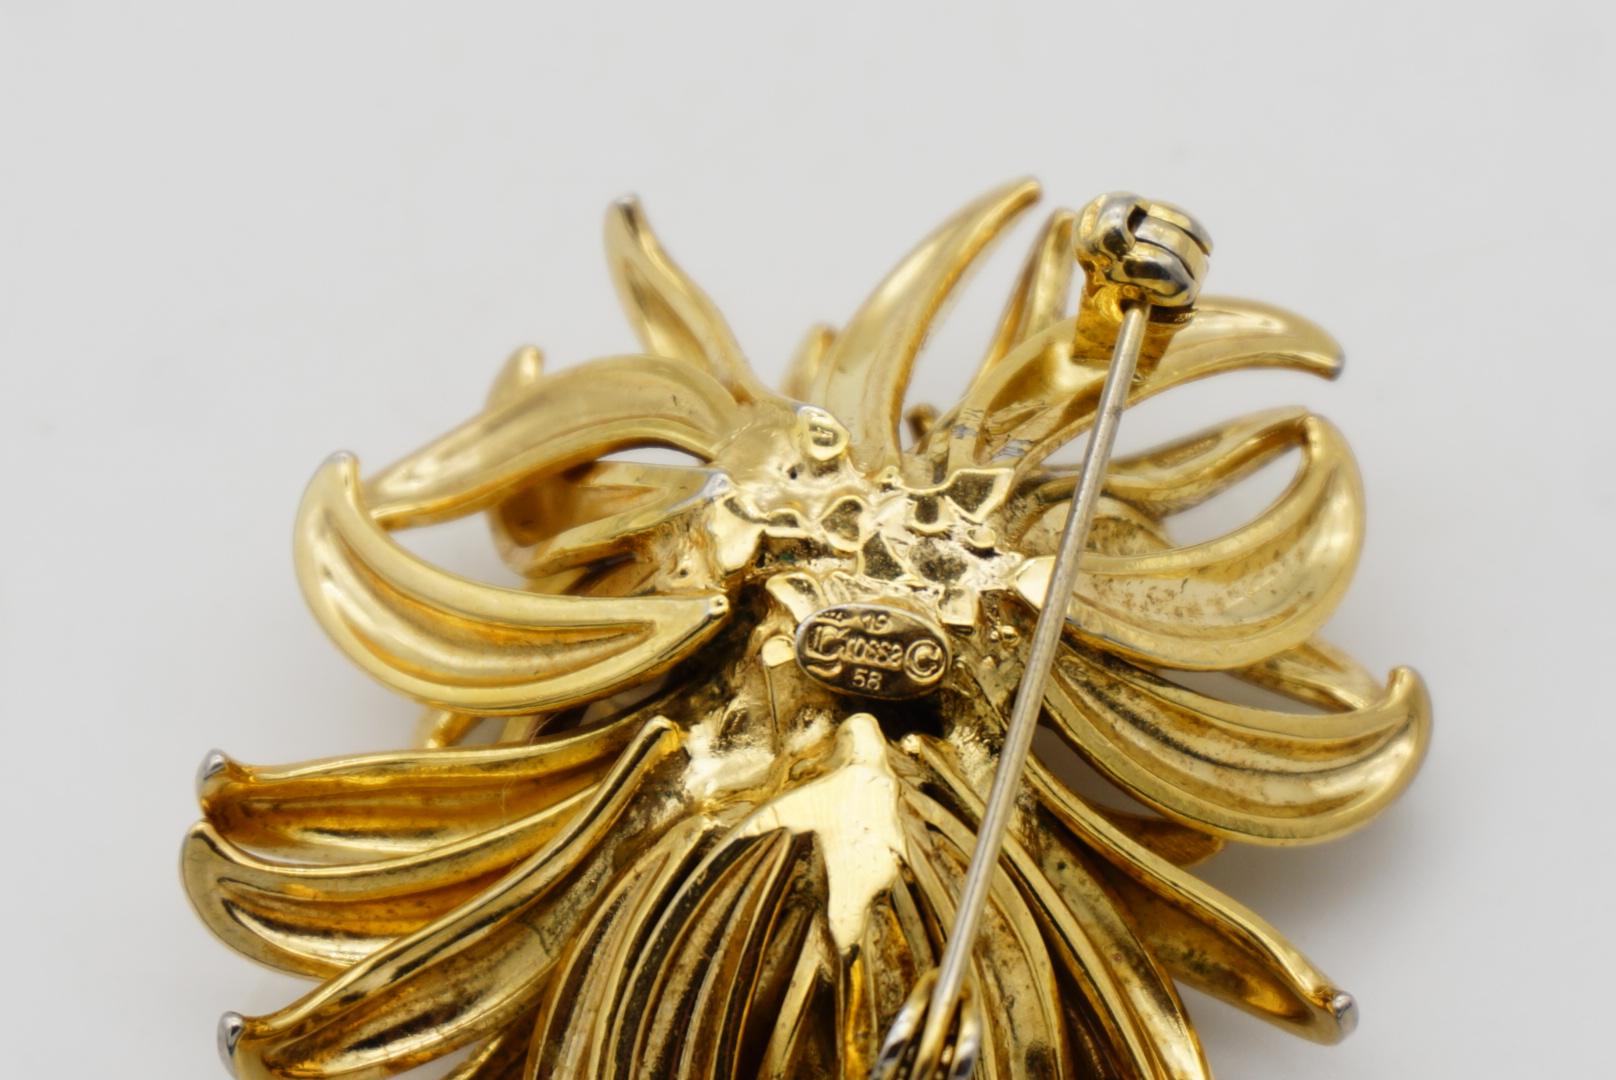 Christian Dior GROSSE 1958 Vintage Large Vivid Flower Gold Exquisite Brooch For Sale 5